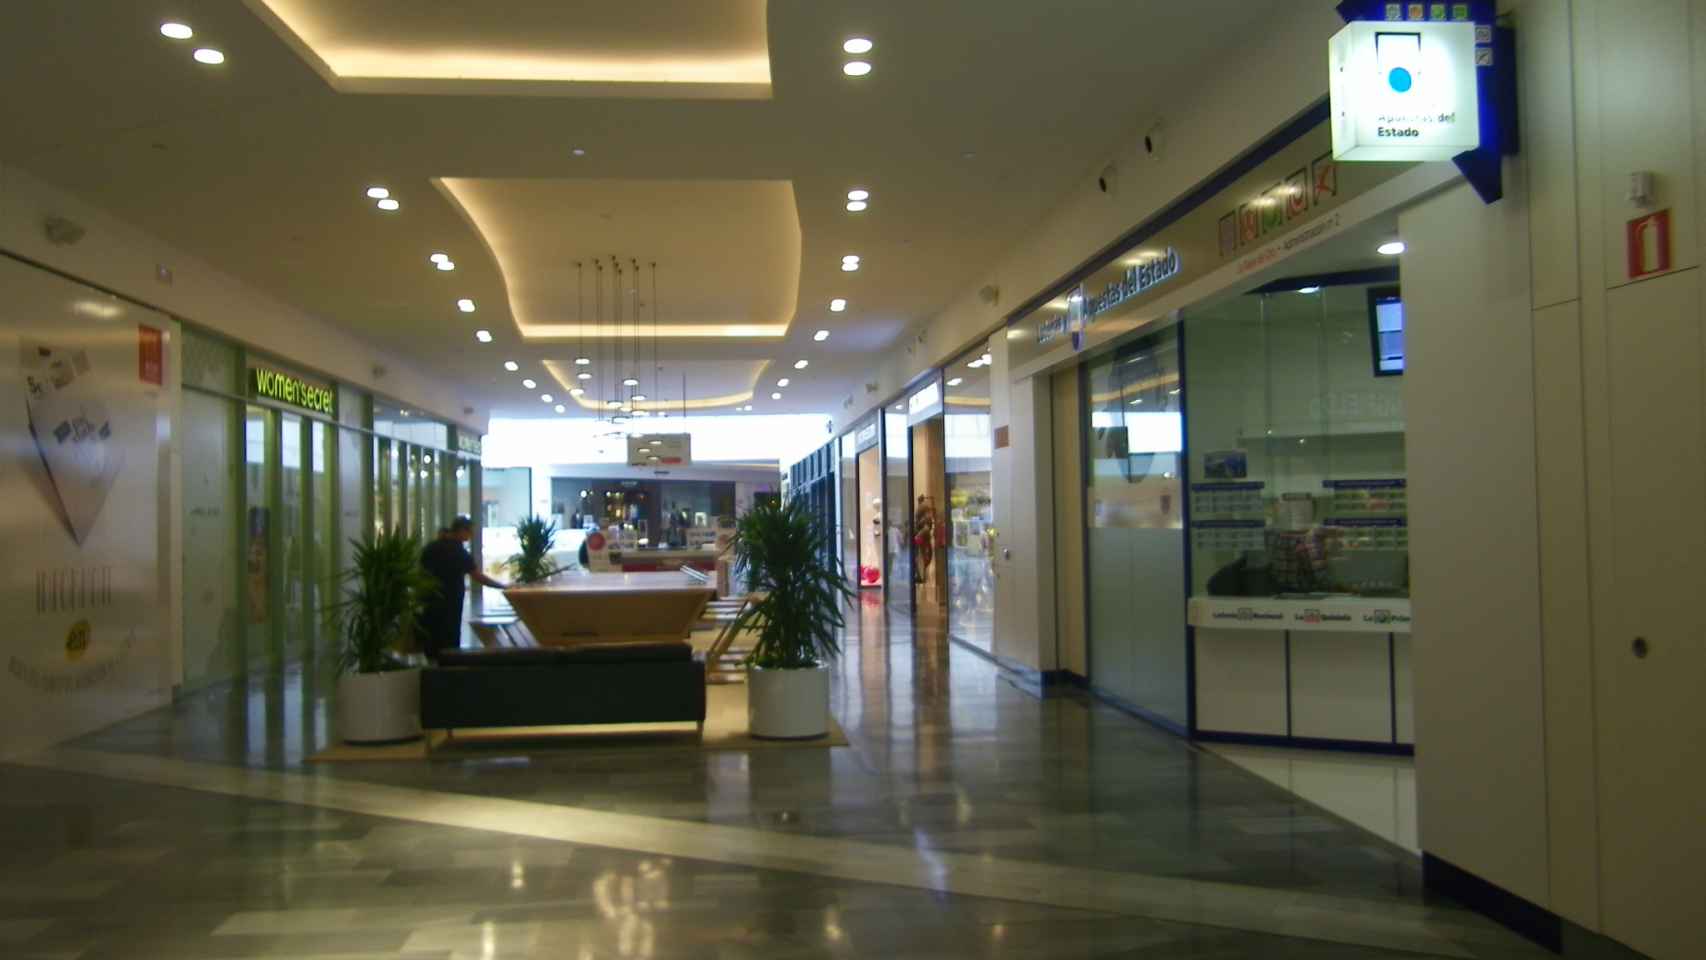 Administración de Rio Shopping, en Arroyo de la Encomienda, Valladolid